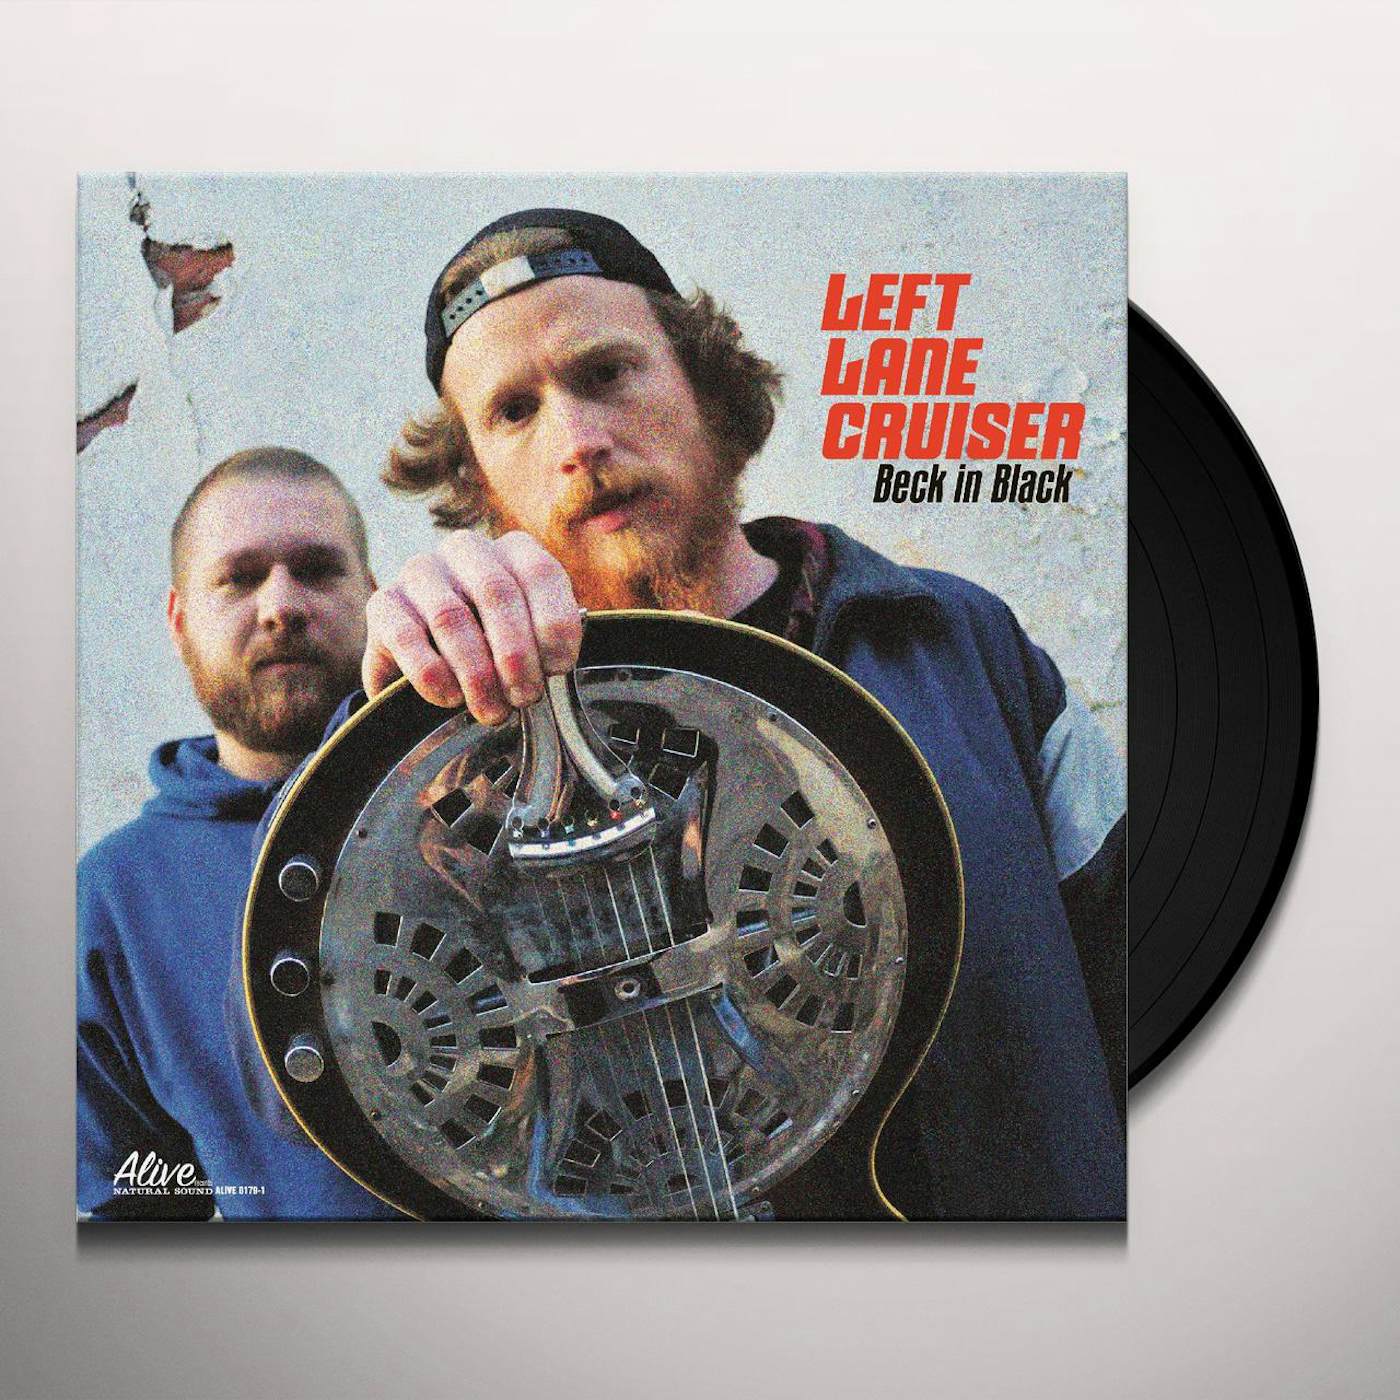 Left Lane Cruiser Beck In Black Vinyl Record